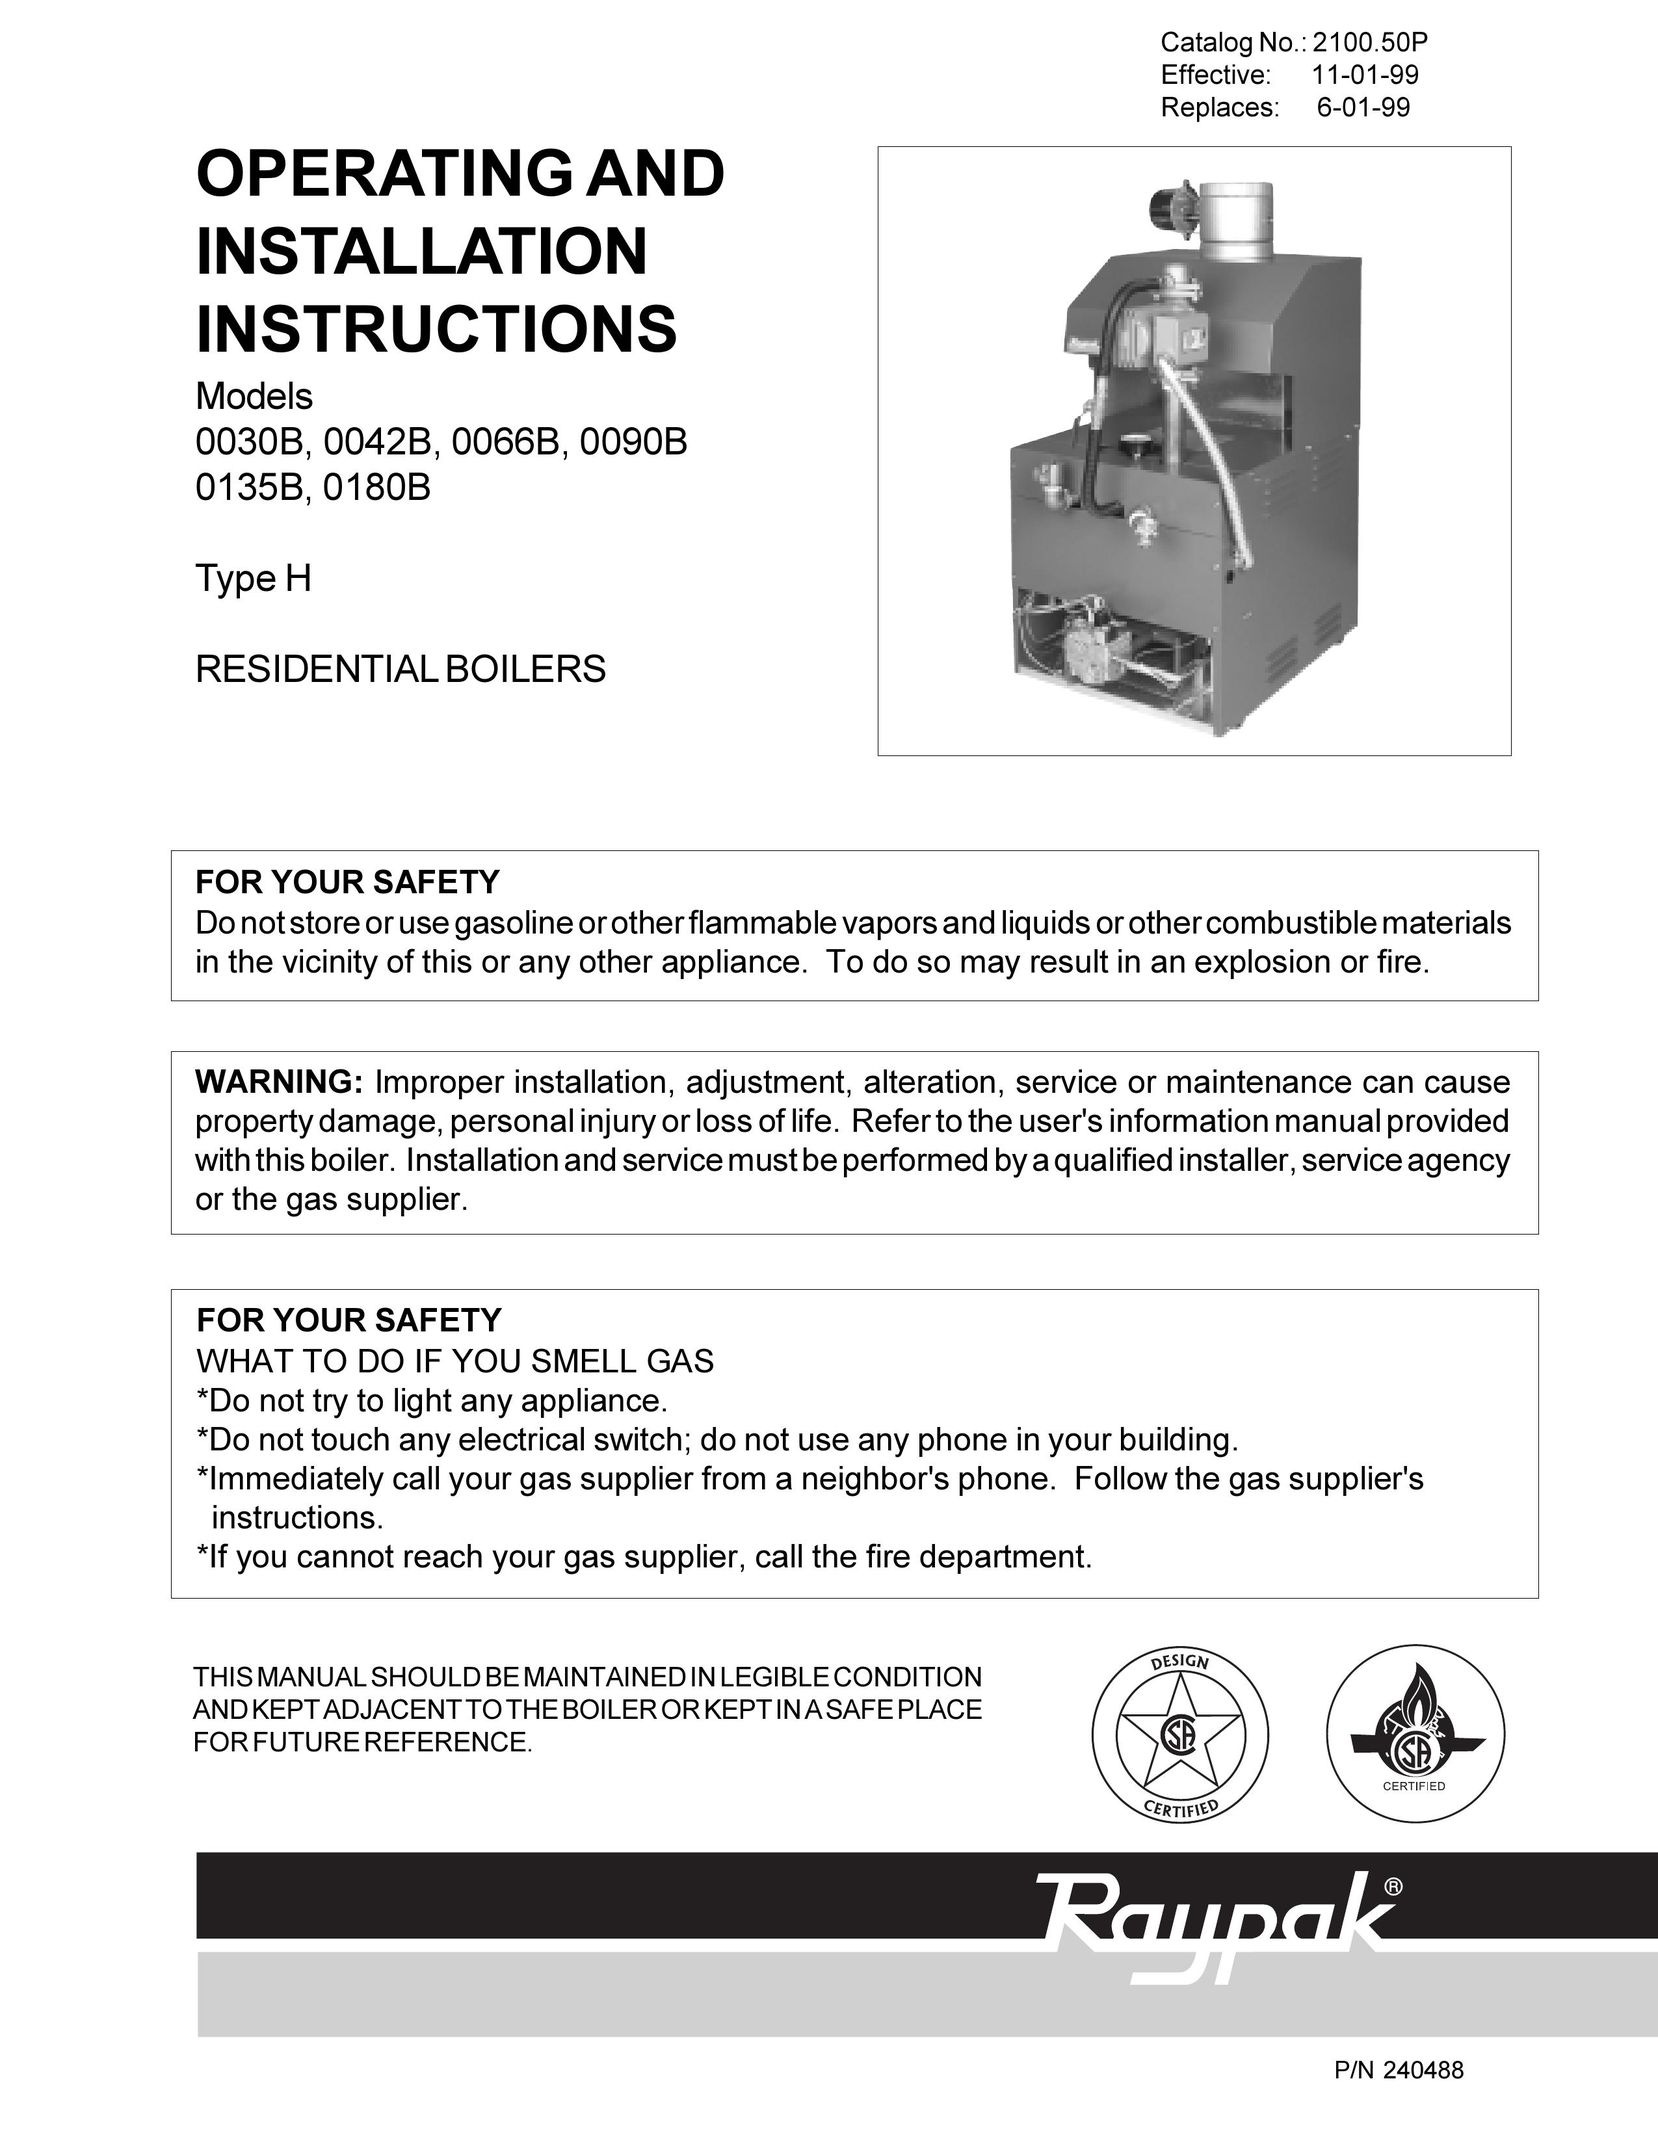 Raypak 0090B 0135B Boiler User Manual